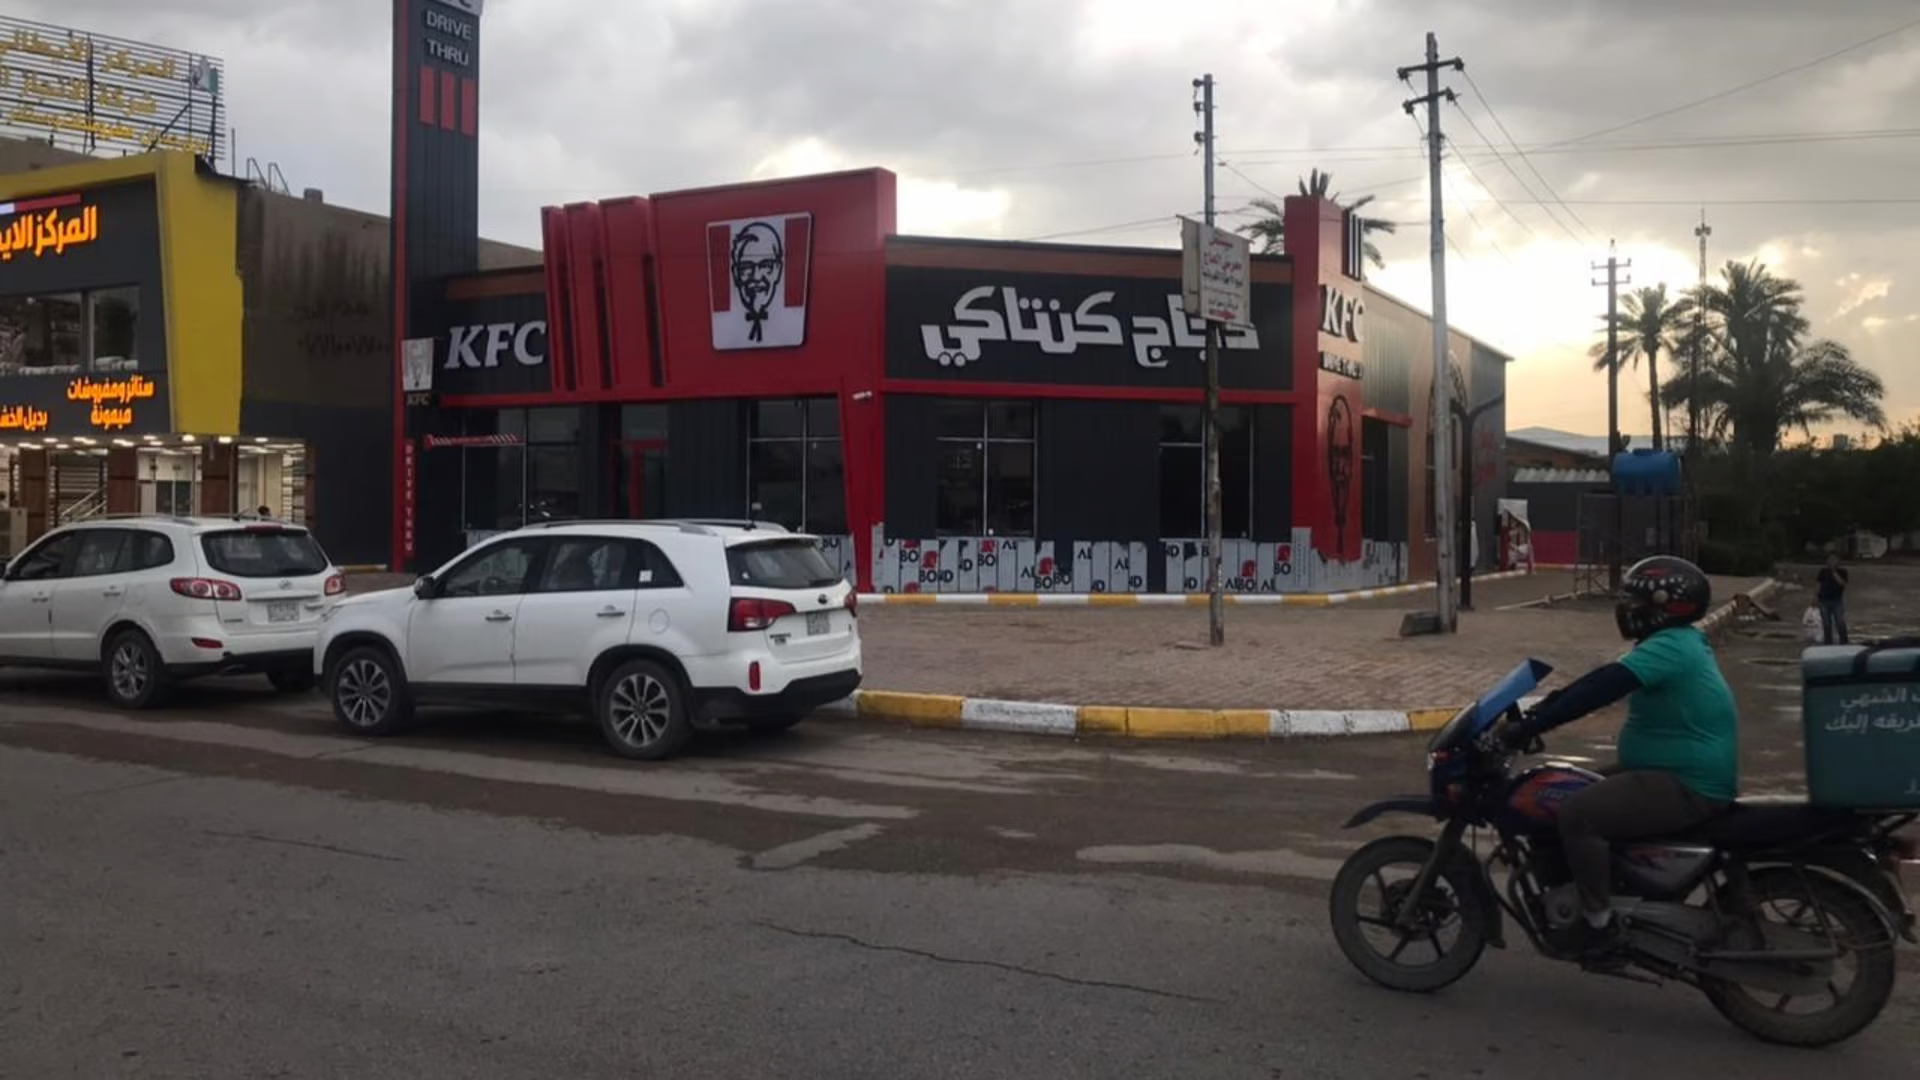 هجوم بالعبوات الناسفة يستهدف مطعم KFC وسط بغداد